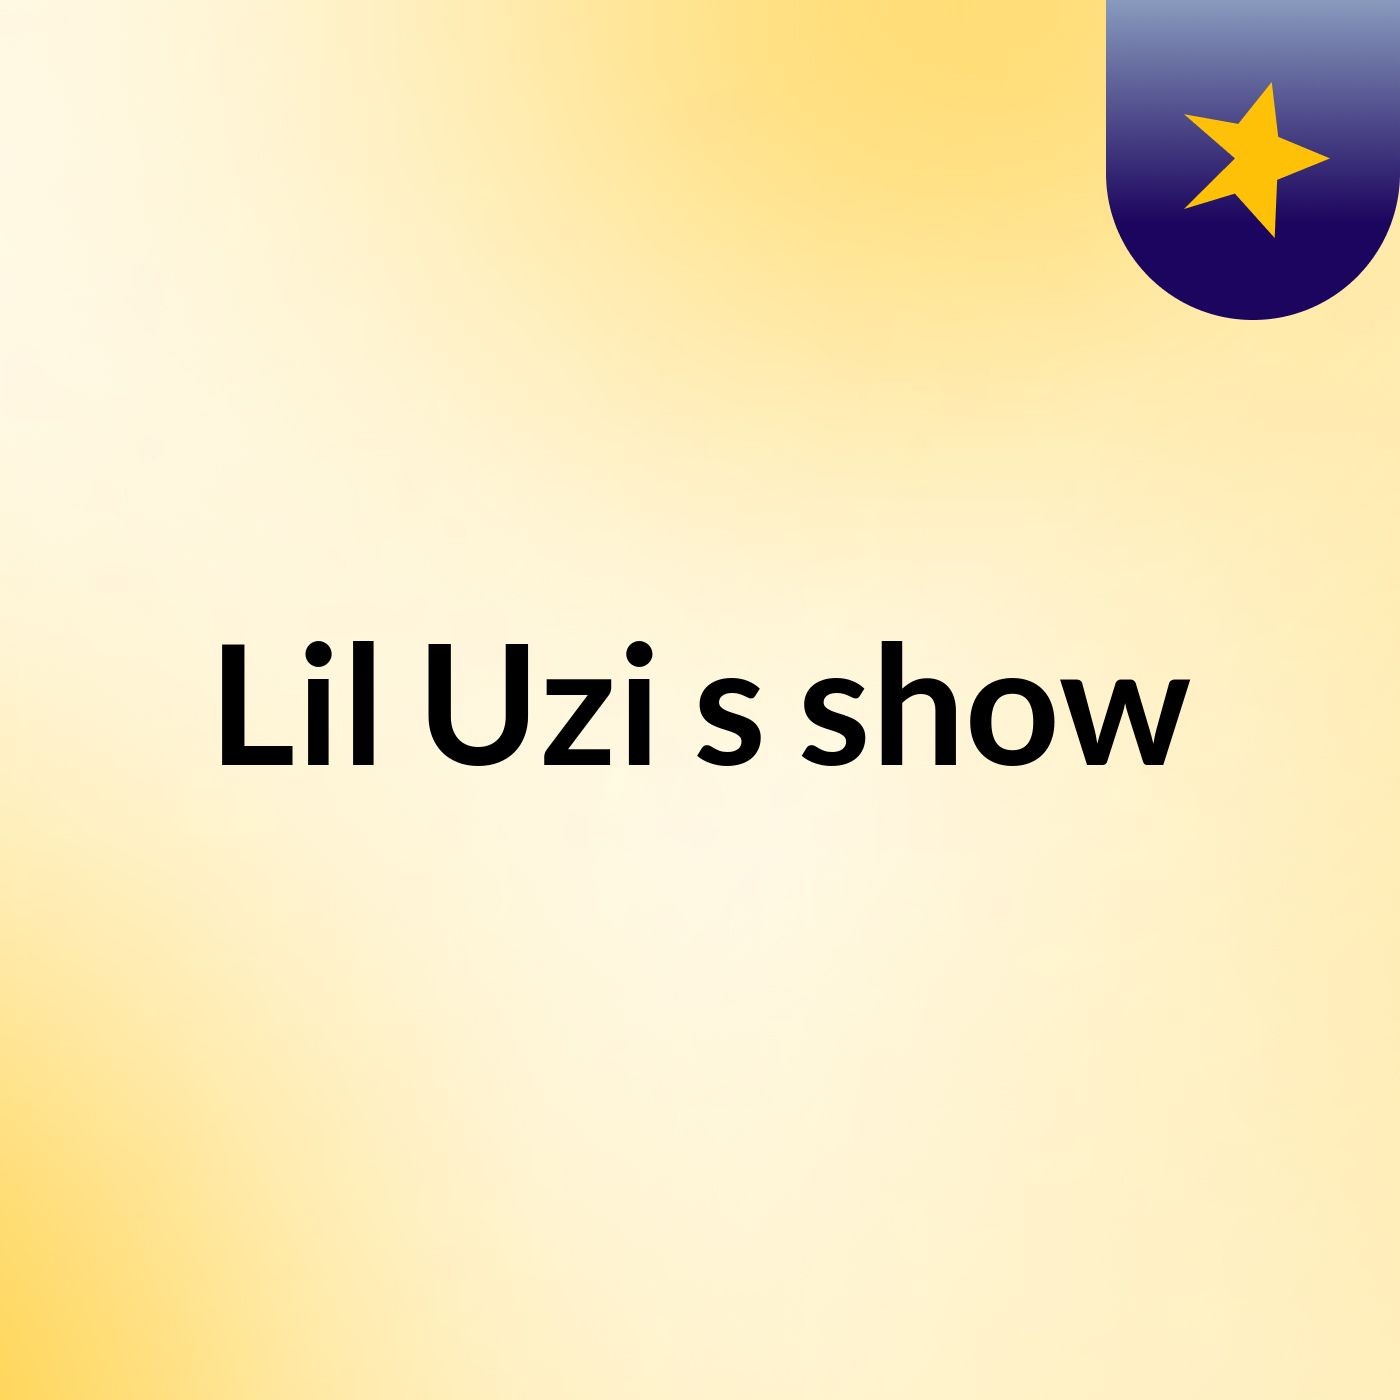 Lil Uzi's show